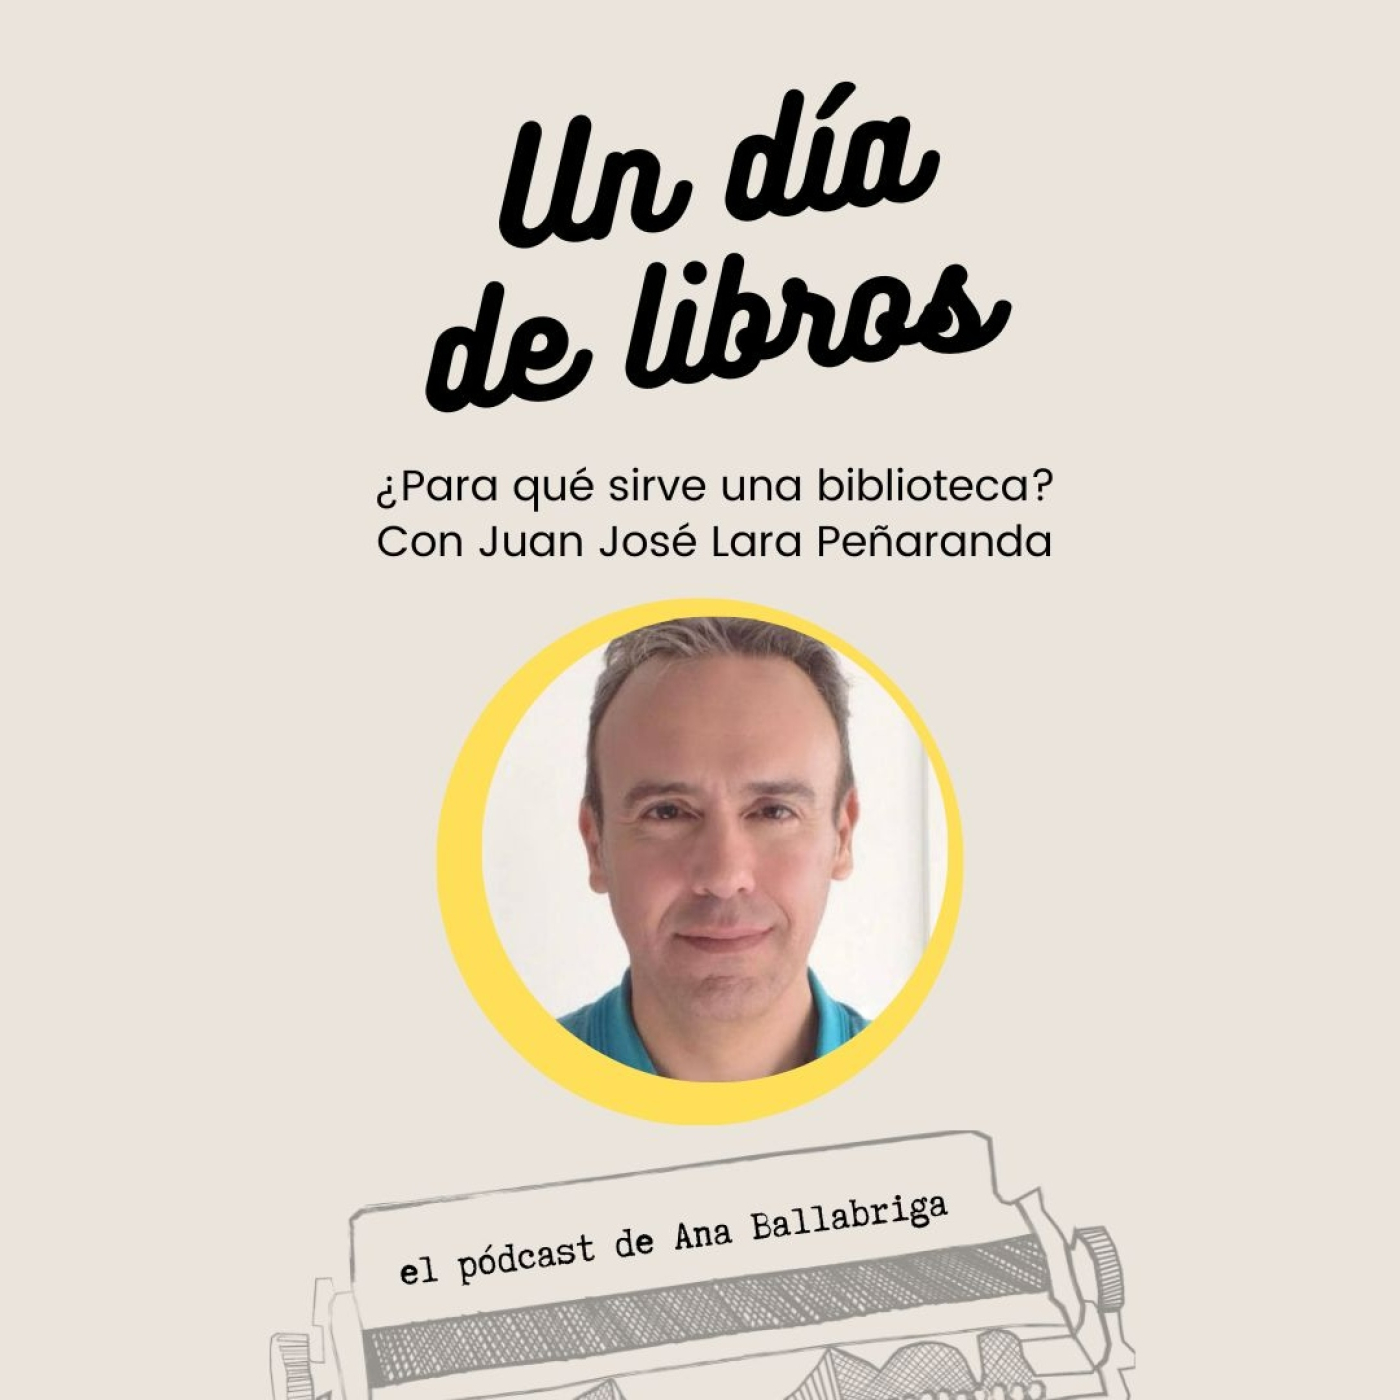 ¿Para qué sirve hoy una biblioteca? Con Juan José Lara Peñaranda